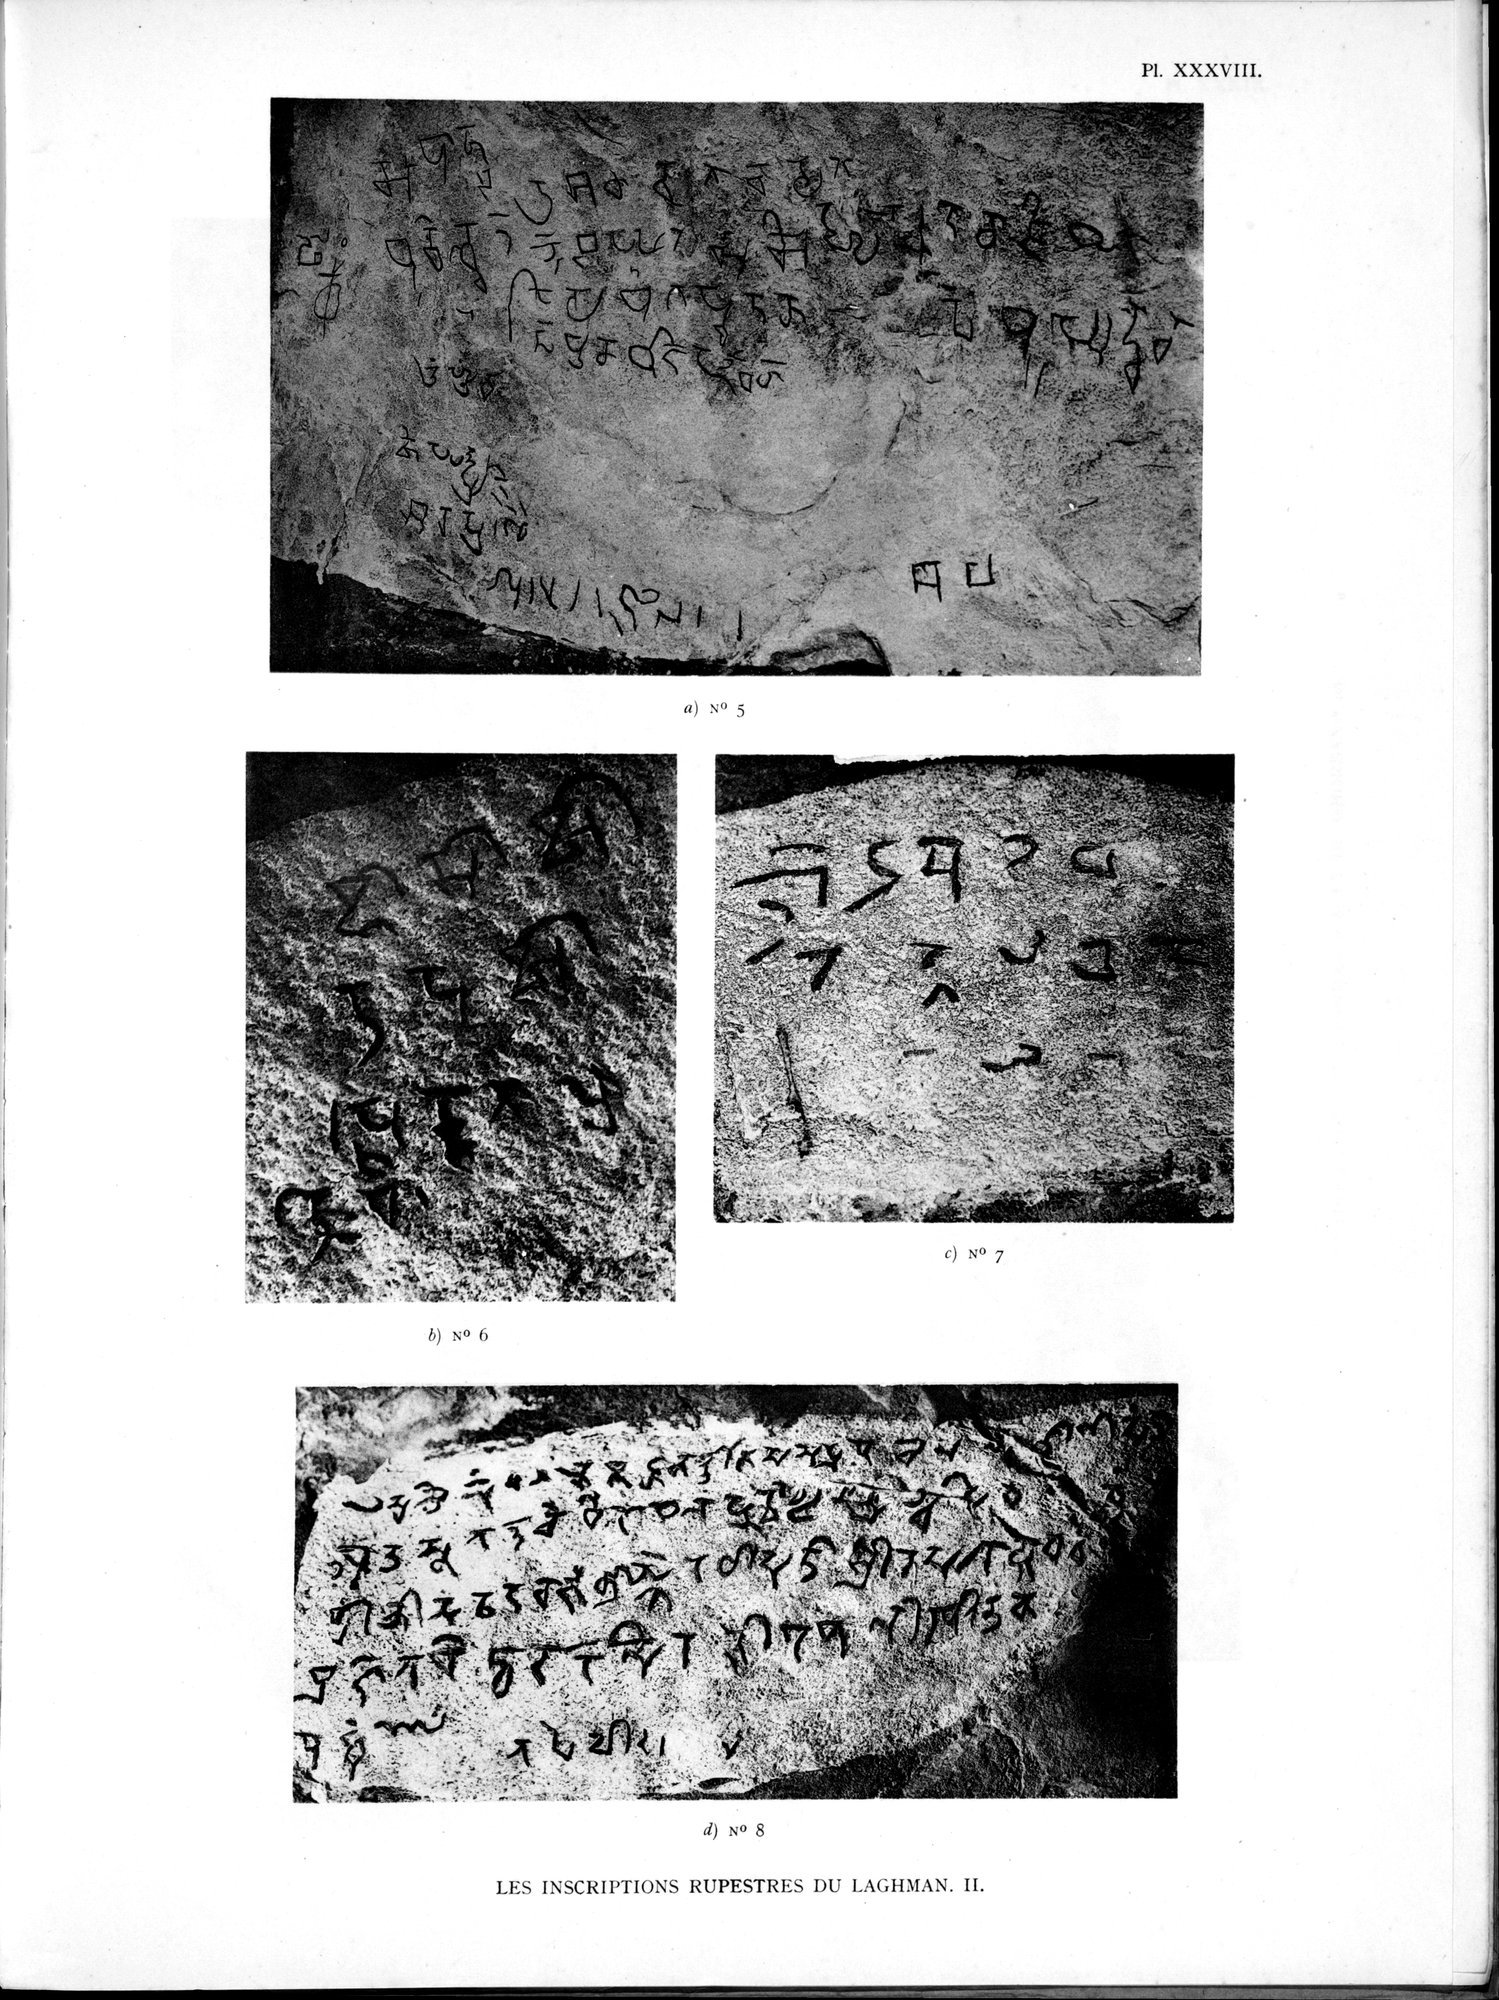 La Vieille Route de l'Inde de Bactres à Taxila : vol.2 / Page 273 (Grayscale High Resolution Image)